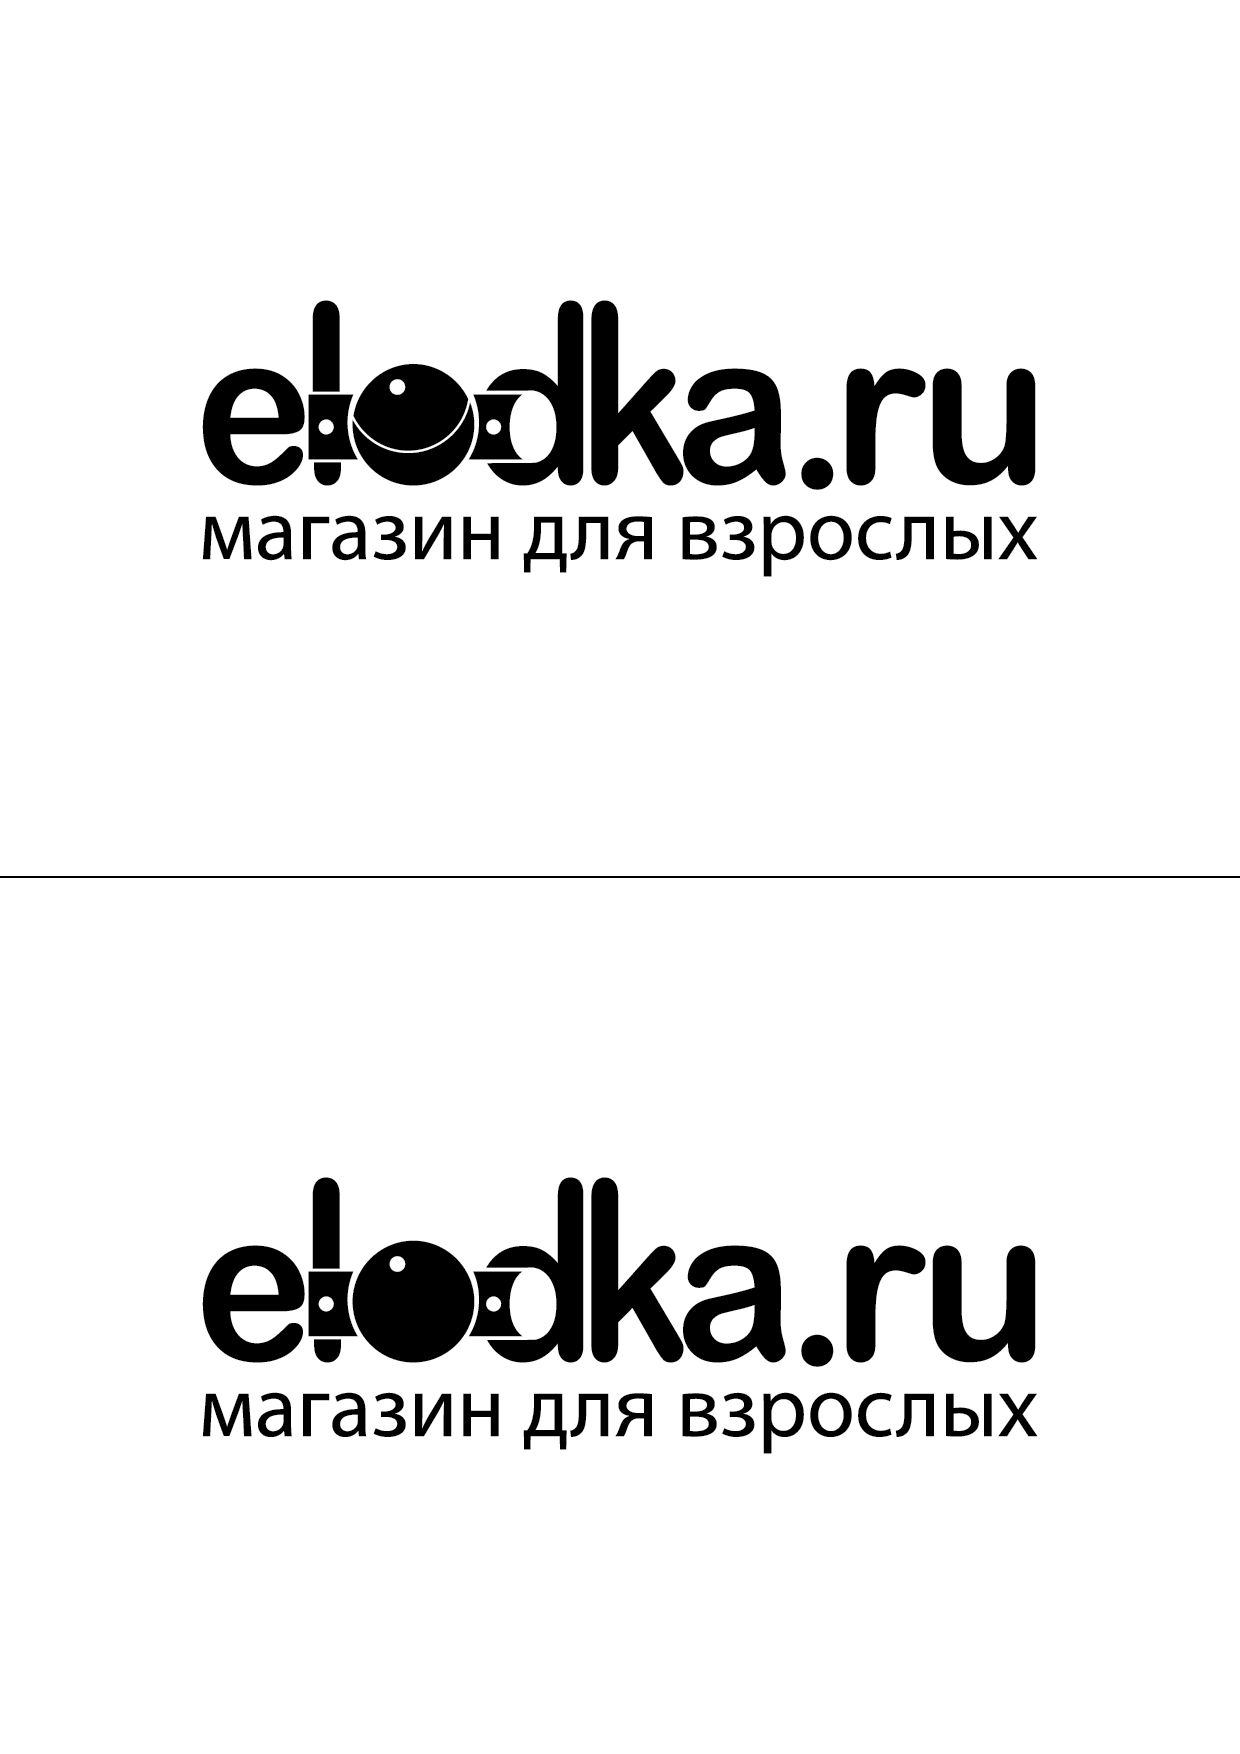 Разработка логотипа магазину эротических товаров  - дизайнер Krupicki